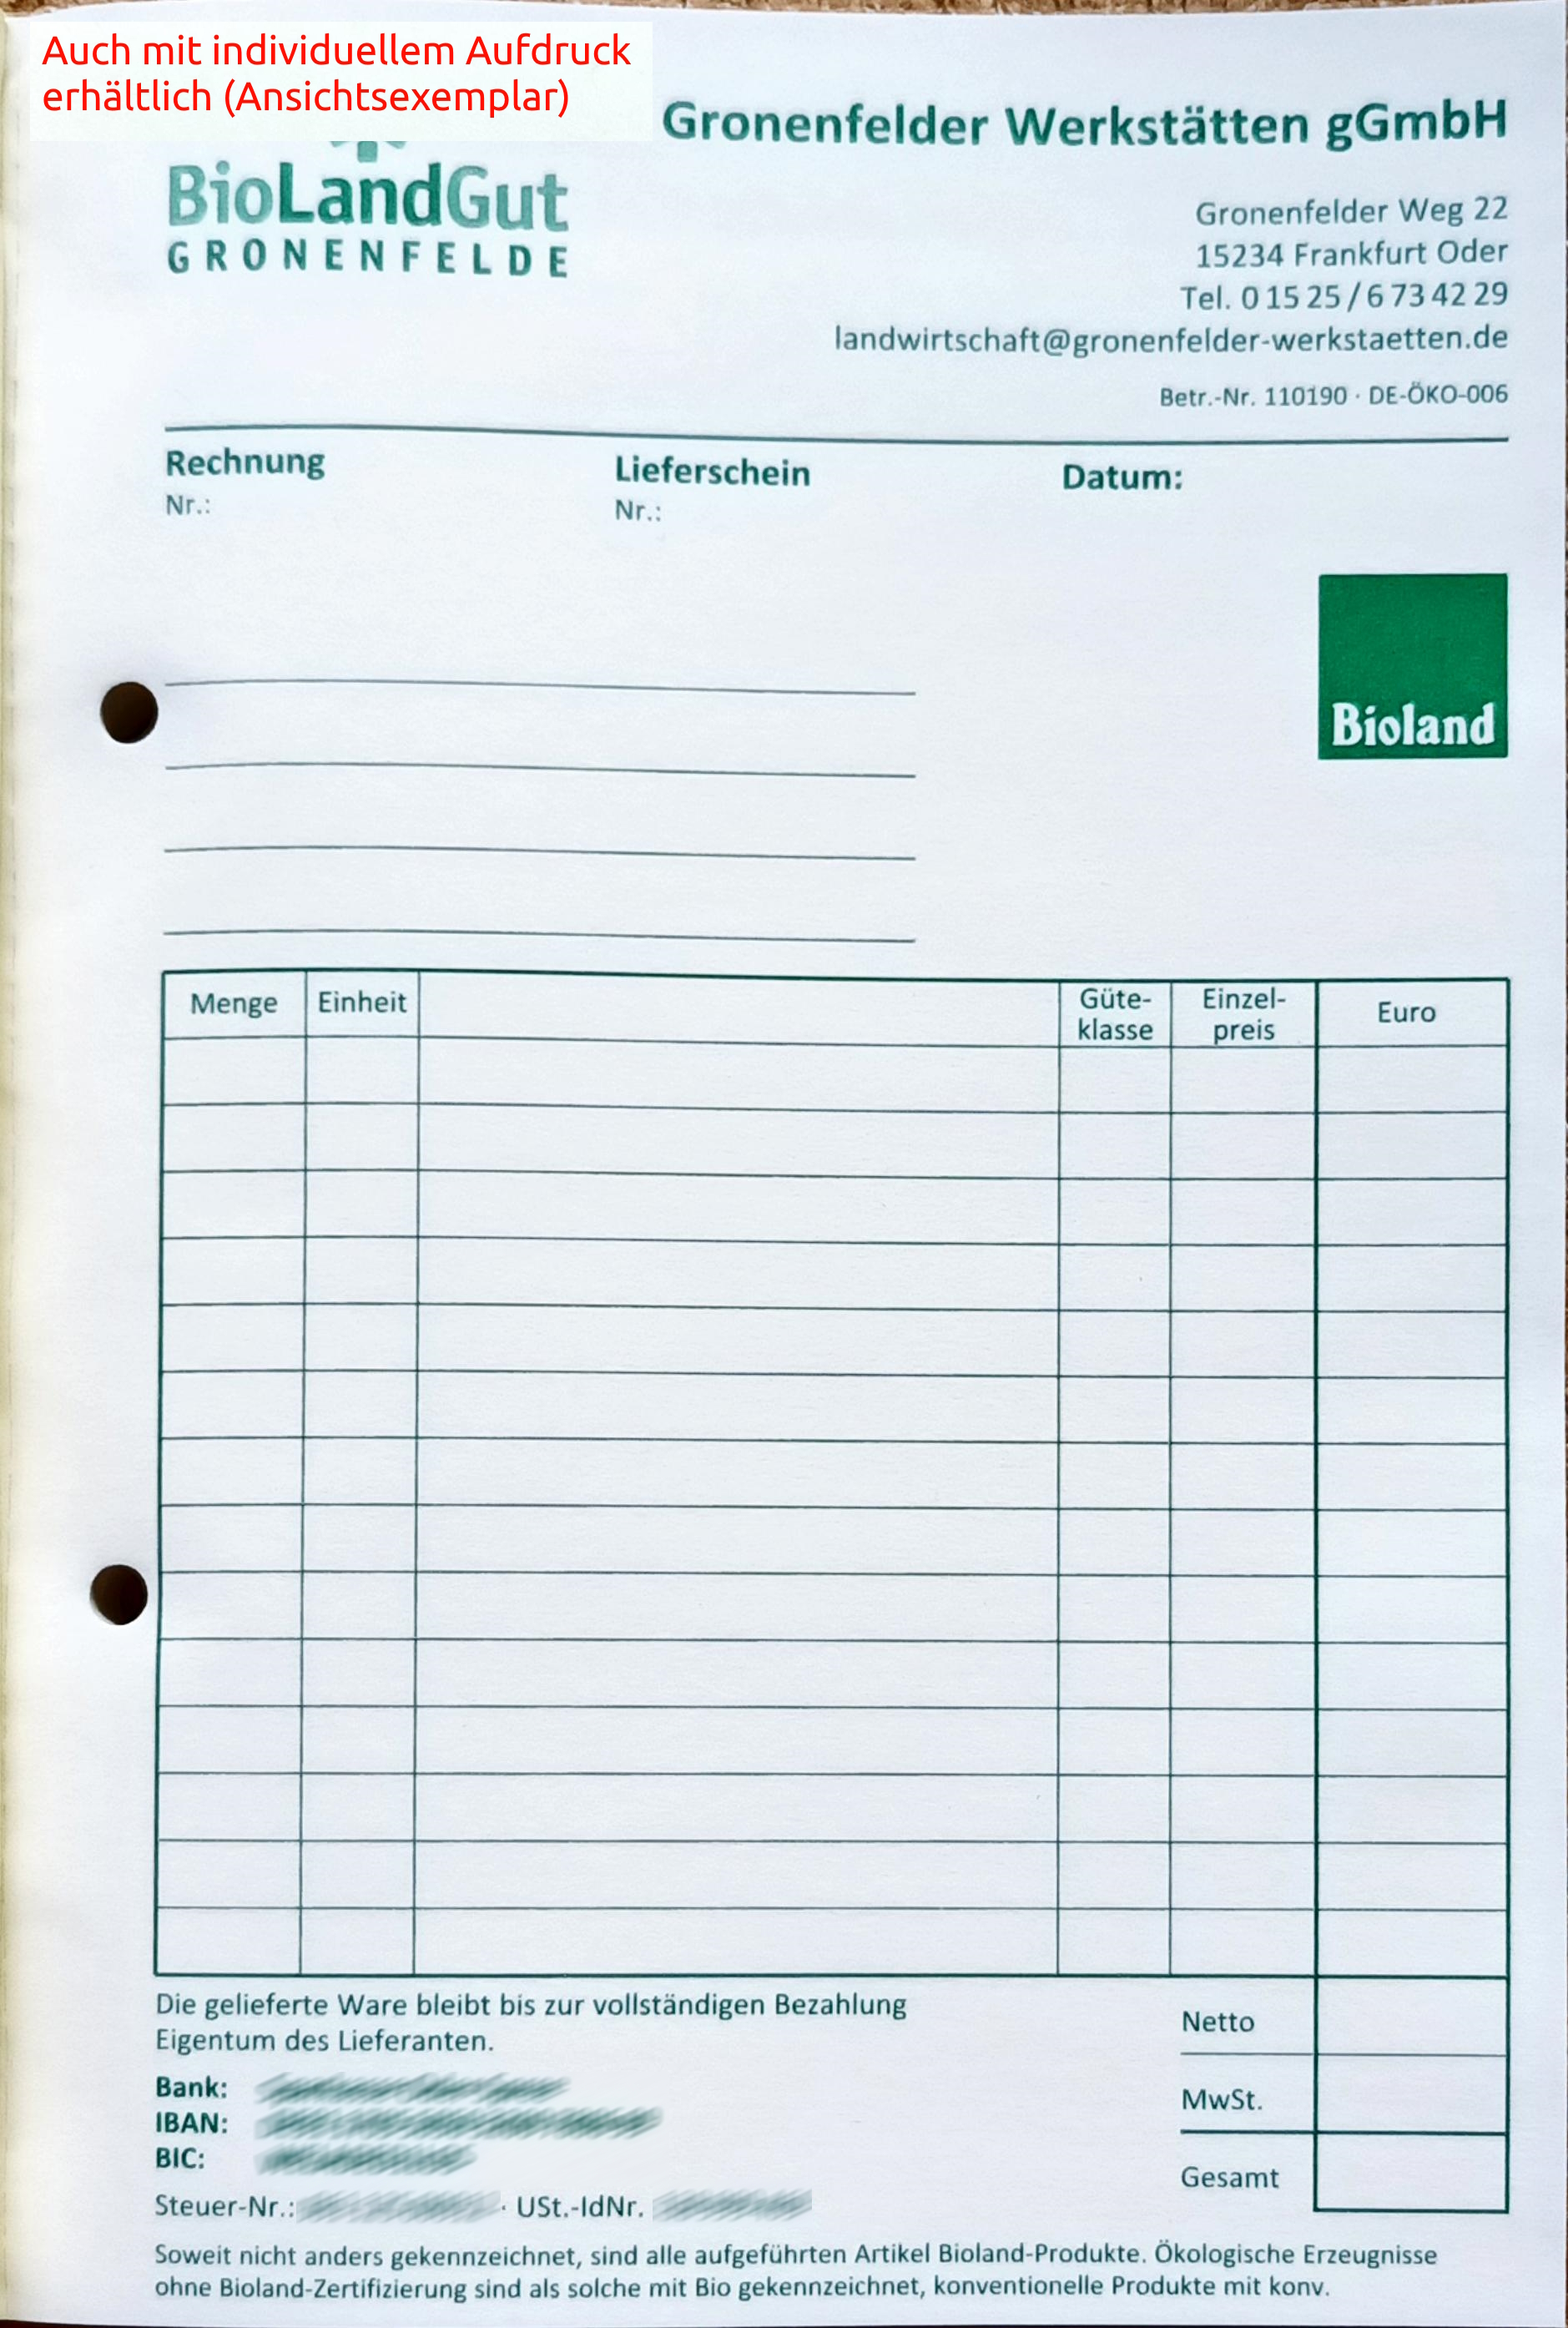 Rechnungs-/Lieferscheinbuch 3-fach